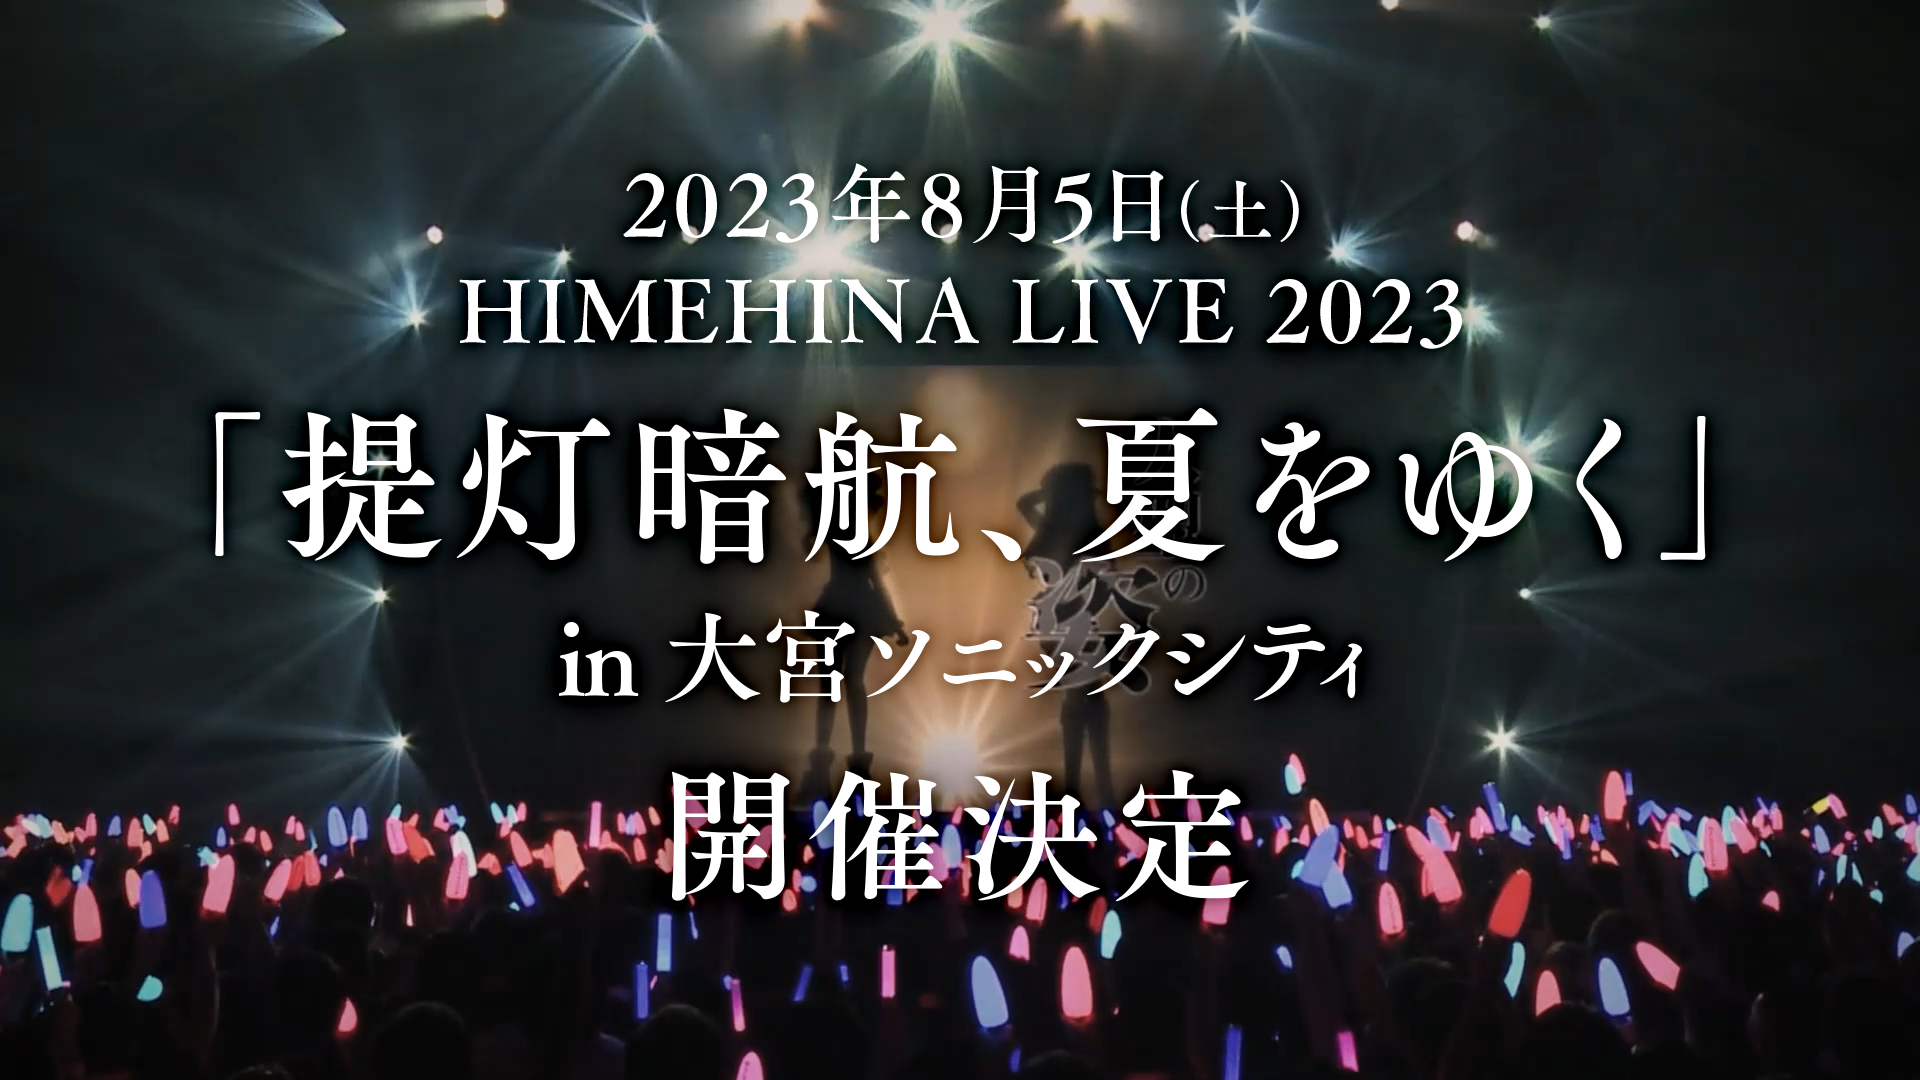 HIMEHINA LIVE 2023『提灯暗航、夏をゆく』開催決定！！ | ヒメヒナ